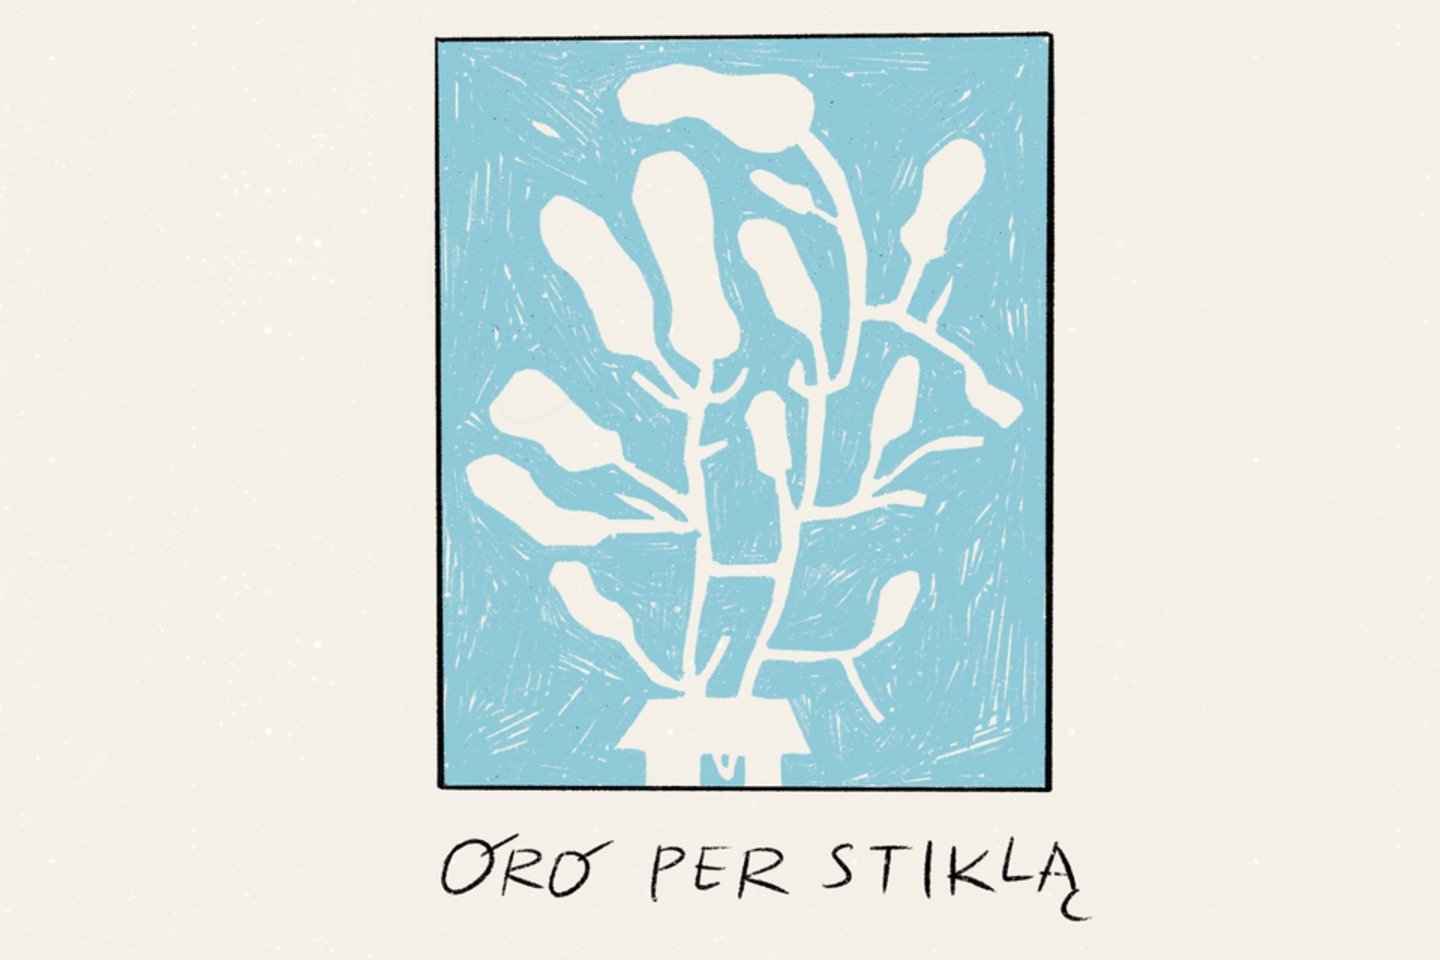 „Oro per stiklą“ – taip vadinasi jau trečiasis singlas iš netrukus pasirodysiančio „Daddy Was A Milkman“ lietuviškų dainų albumo „Kai ruduo mokė mane“.